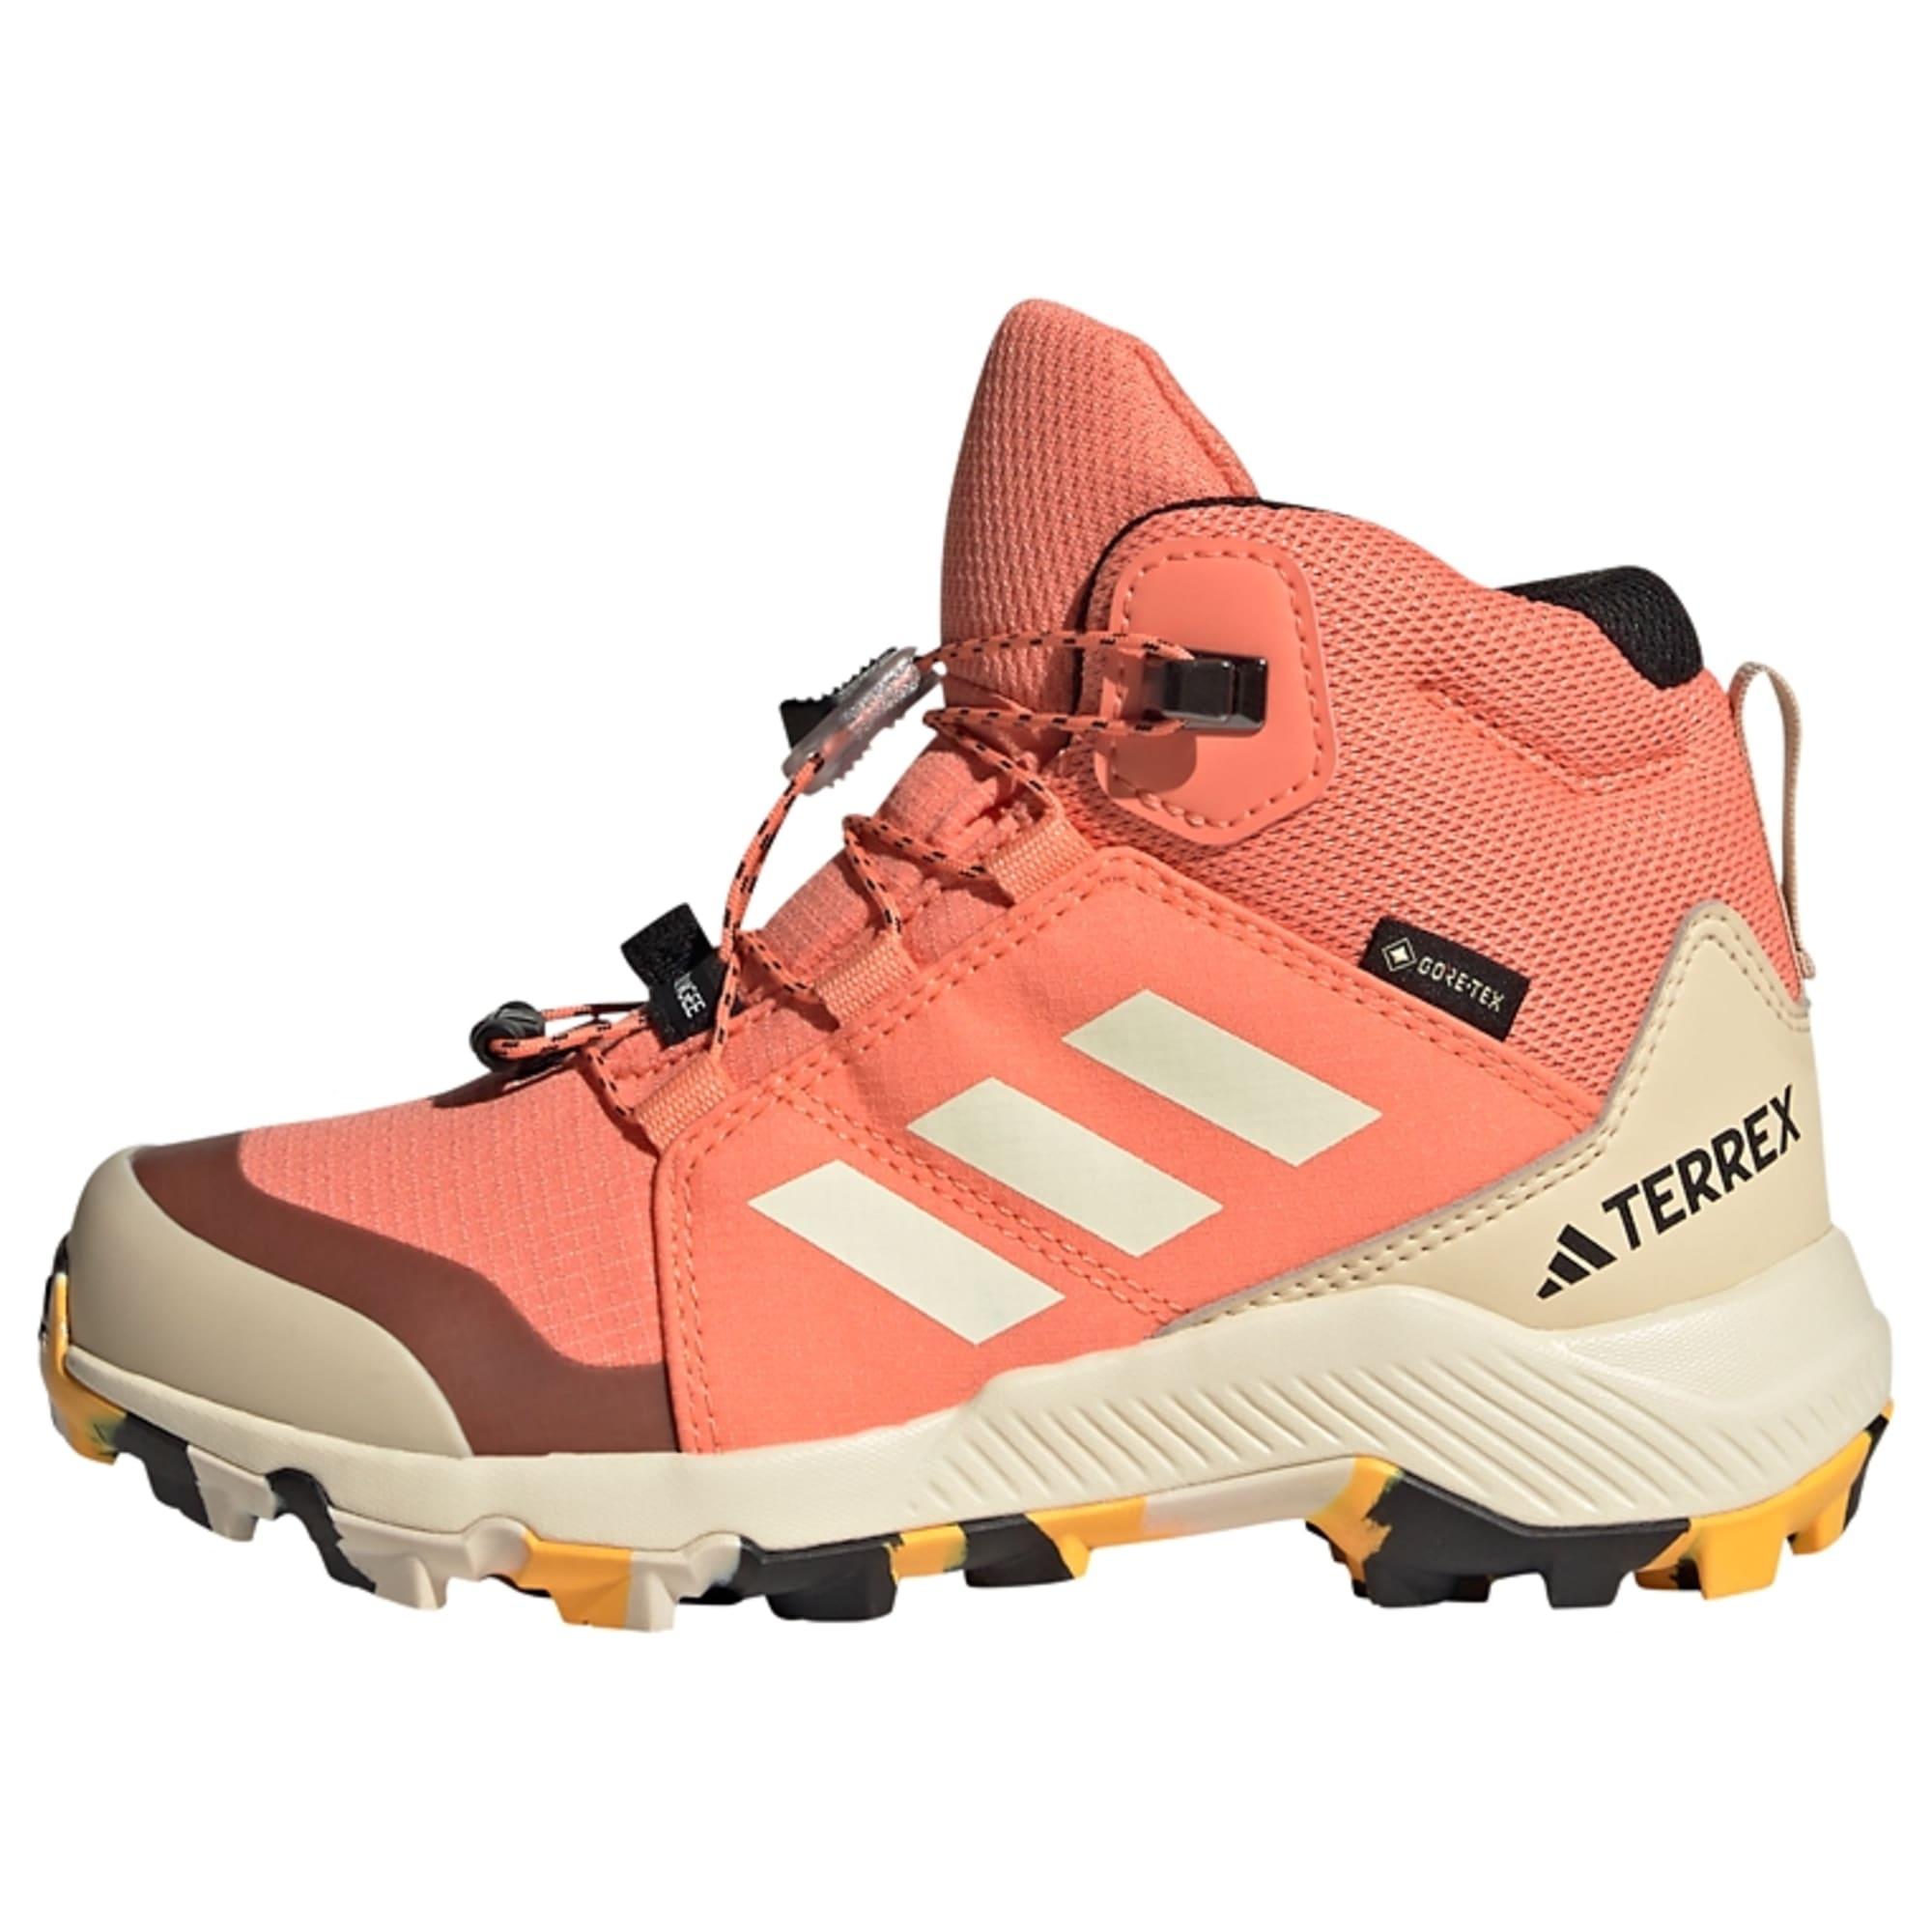 Adidas Organizer Mid GORE-TEX Wanderschuh Winterschuhe Kinder Coral Fusion  / Wonder White / Core Black im Online Shop von SportScheck kaufen